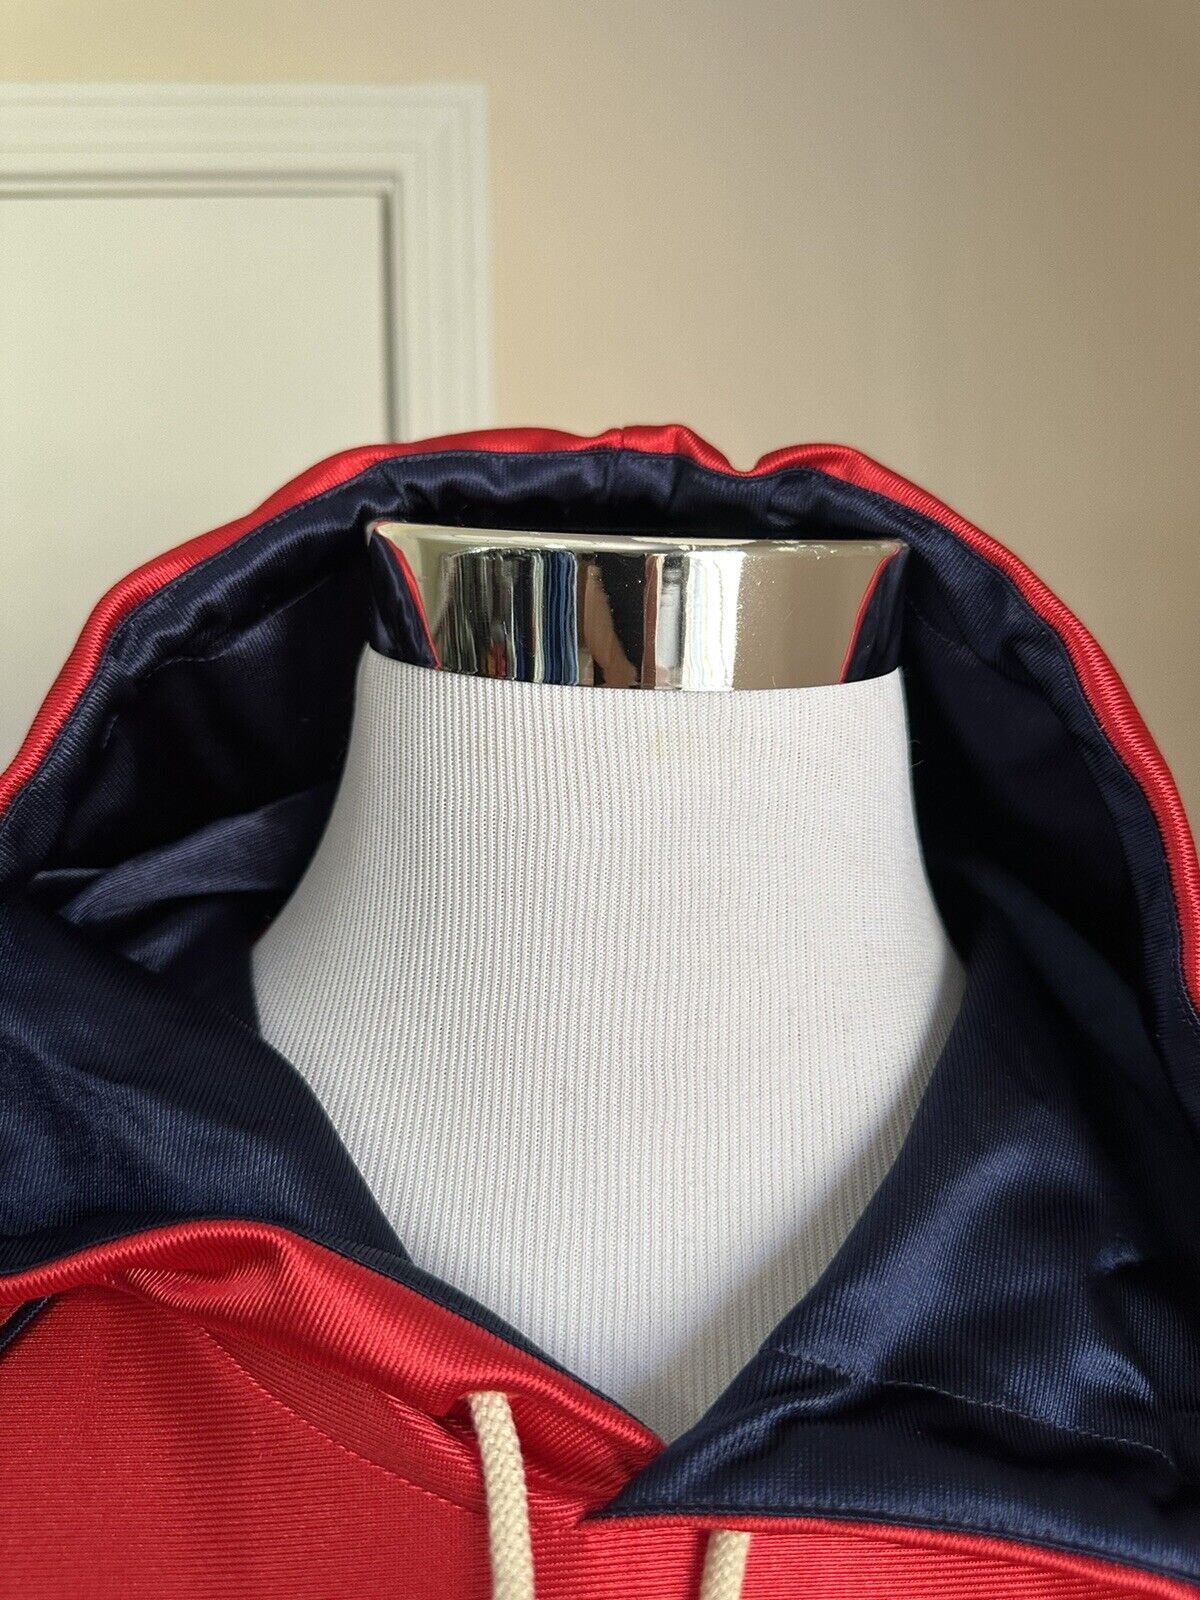 Neu mit Etikett: 1550 $ Gucci Herren-Trainingsjacke aus technischem Polyester, rot, Größe XXL